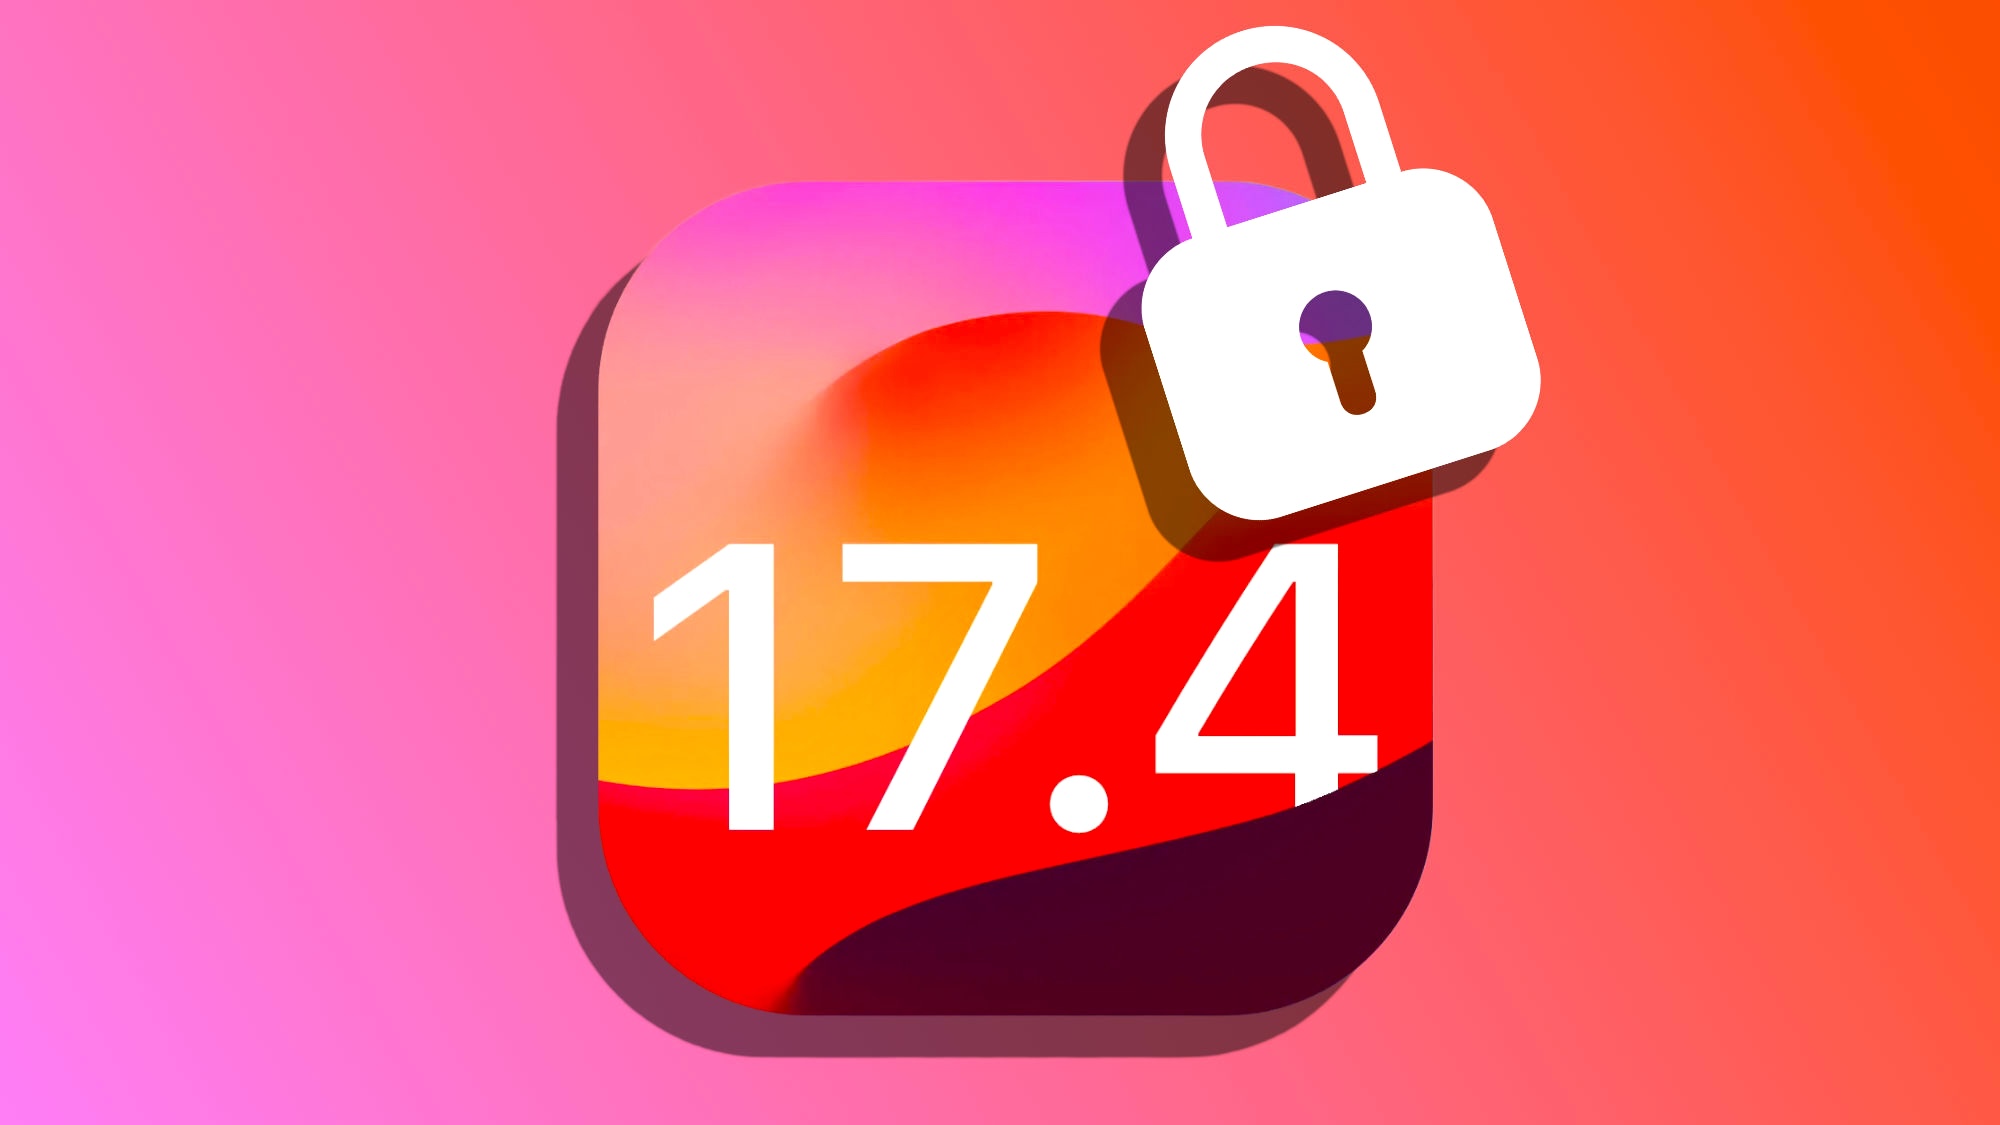 iOS-17.4-seguirdad-mejorada-